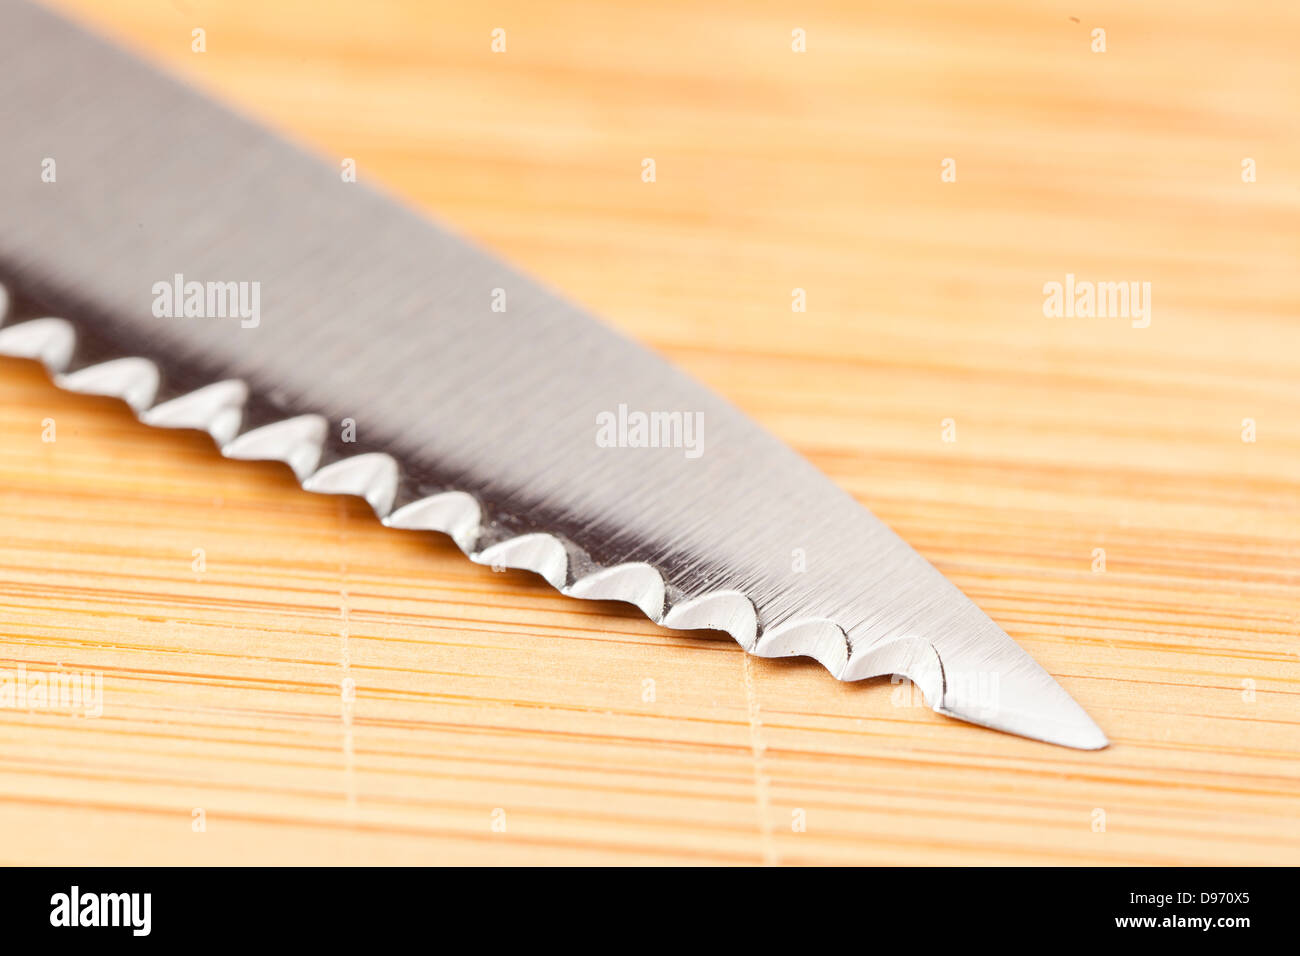 Couteau métal brillant sur une planche à découper en bois Banque D'Images